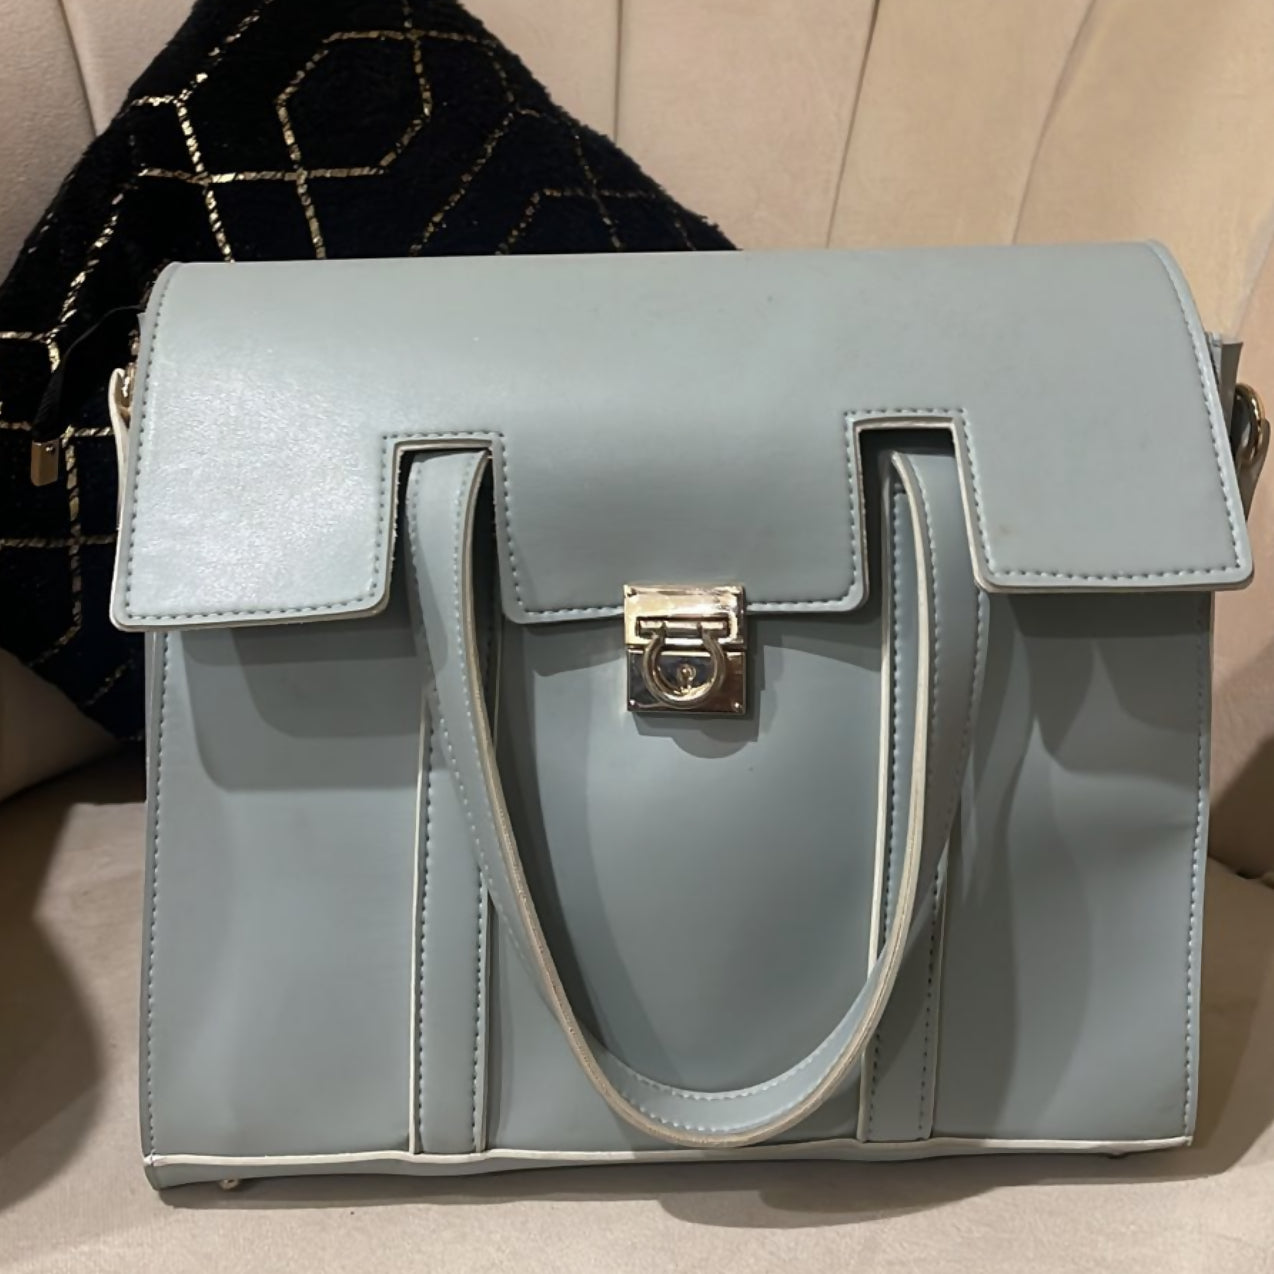 نیلے رنگ کے چمڑے کا بیگ (سائز: M ) | خواتین کے بیگ | نئی 